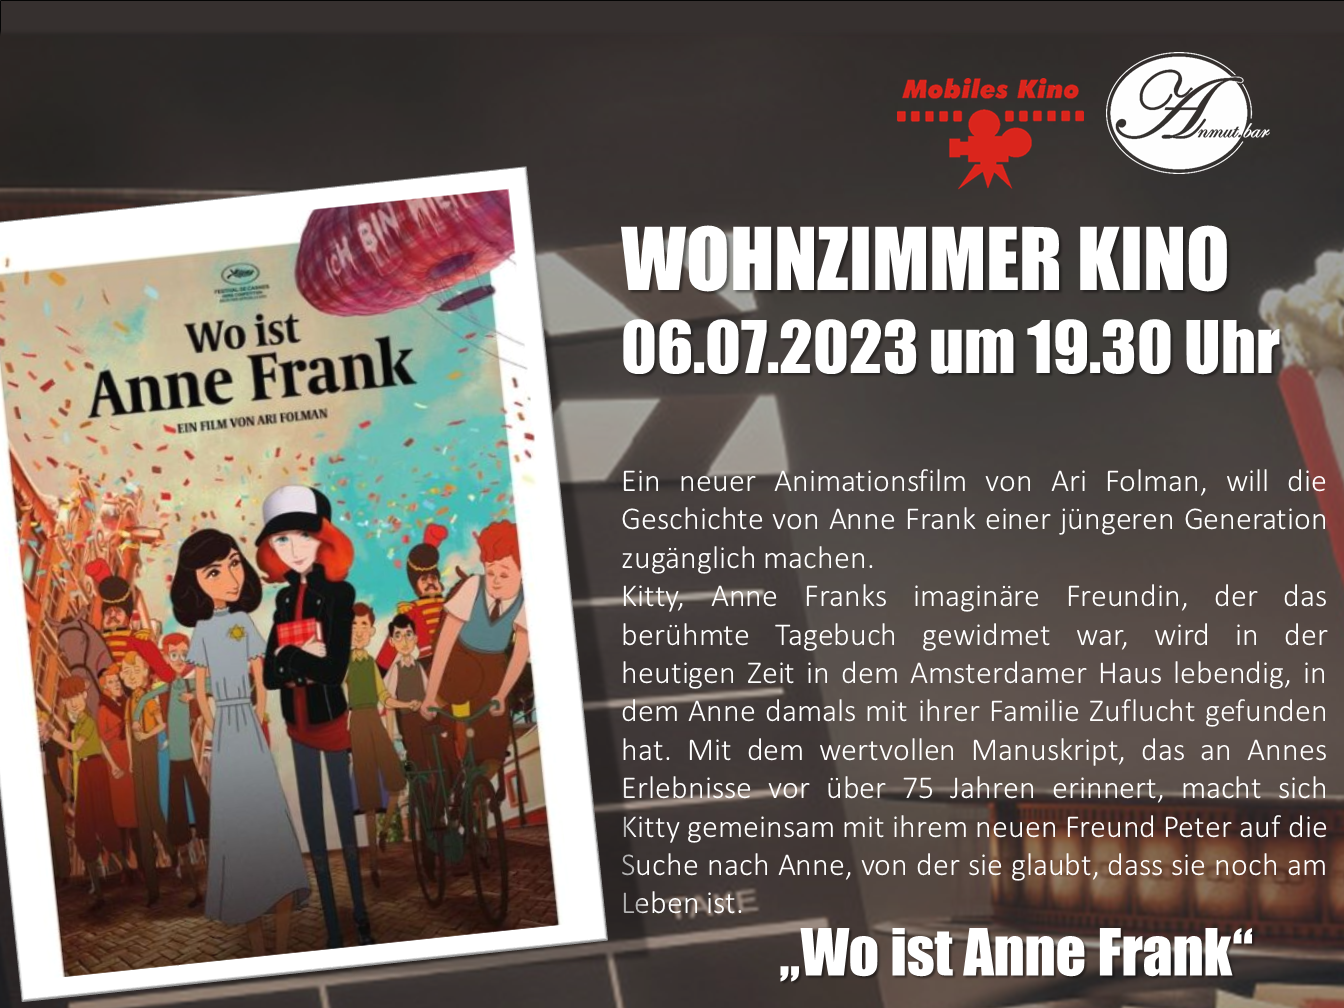 Wohnzimmerkino: „Wo ist Anne Frank“